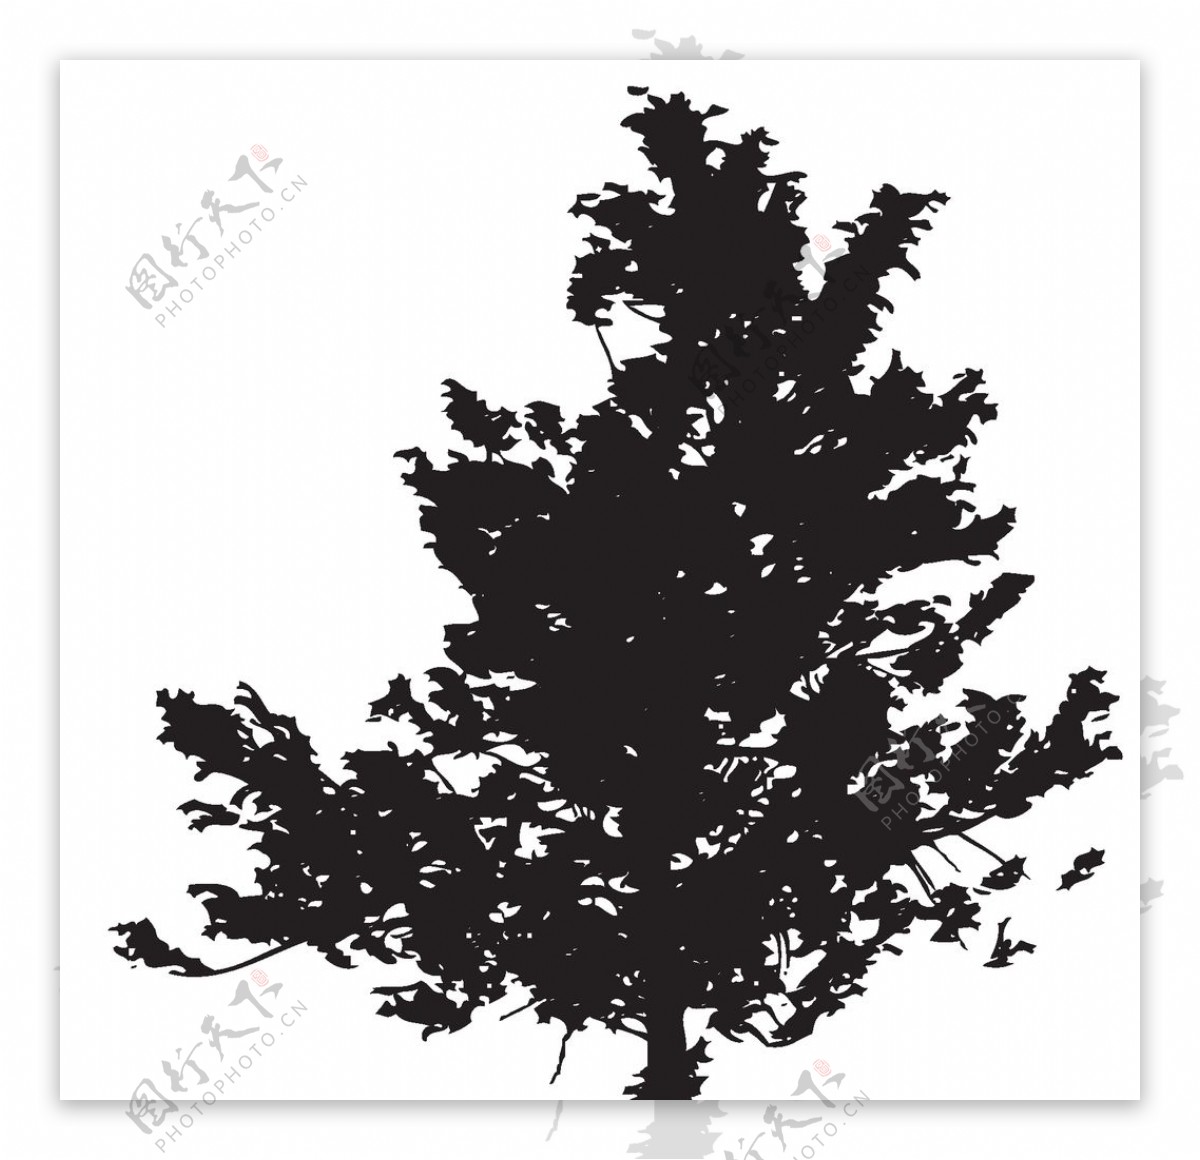 黑色植物树木剪影